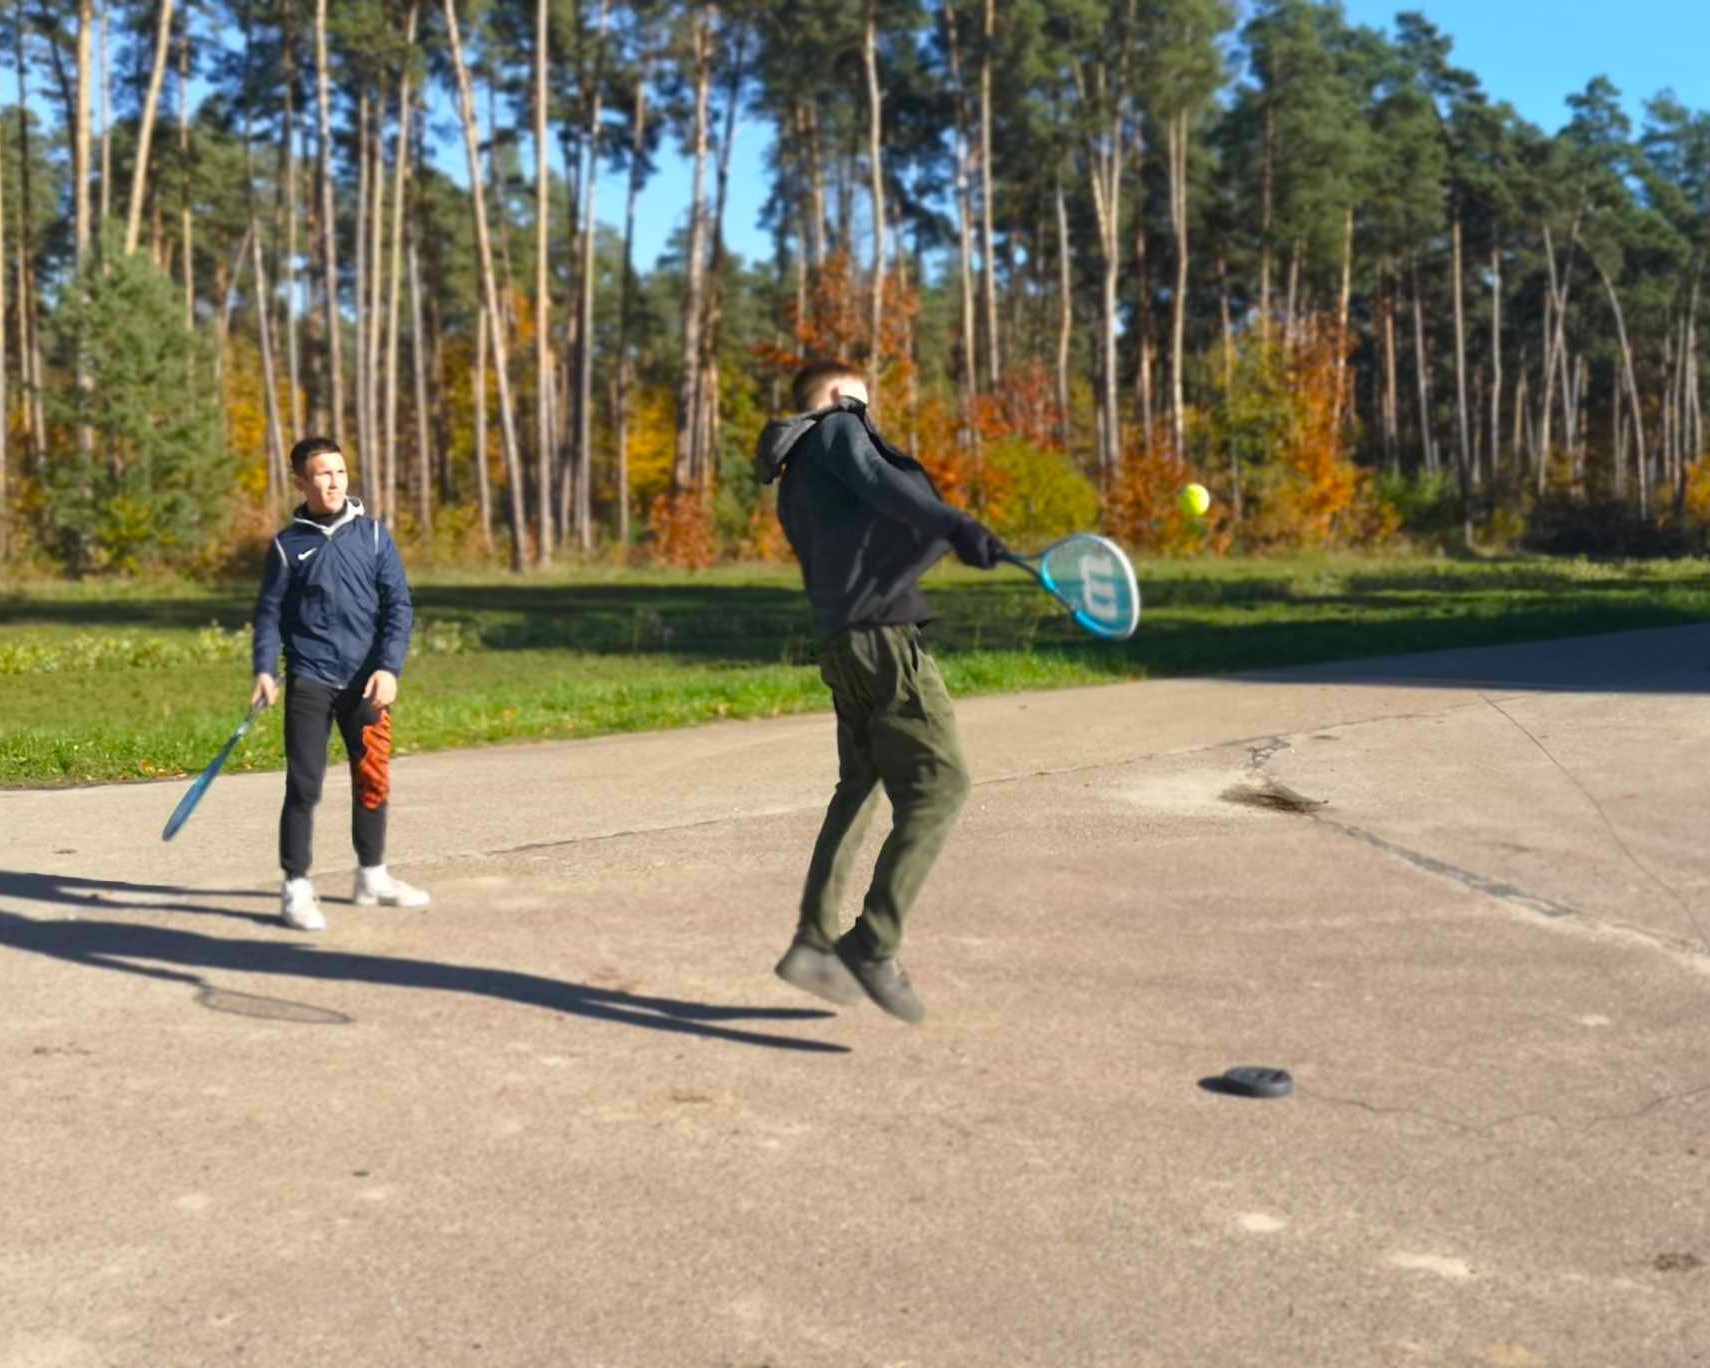 Zajęcia w szkółce leśnej | Dwóch chłopców z rakietkami, podczas gry na placu. Jeden jest w trakcie wyskoku, tuż przed odbiciem piłki w locie. W tle jesienny las..jpg